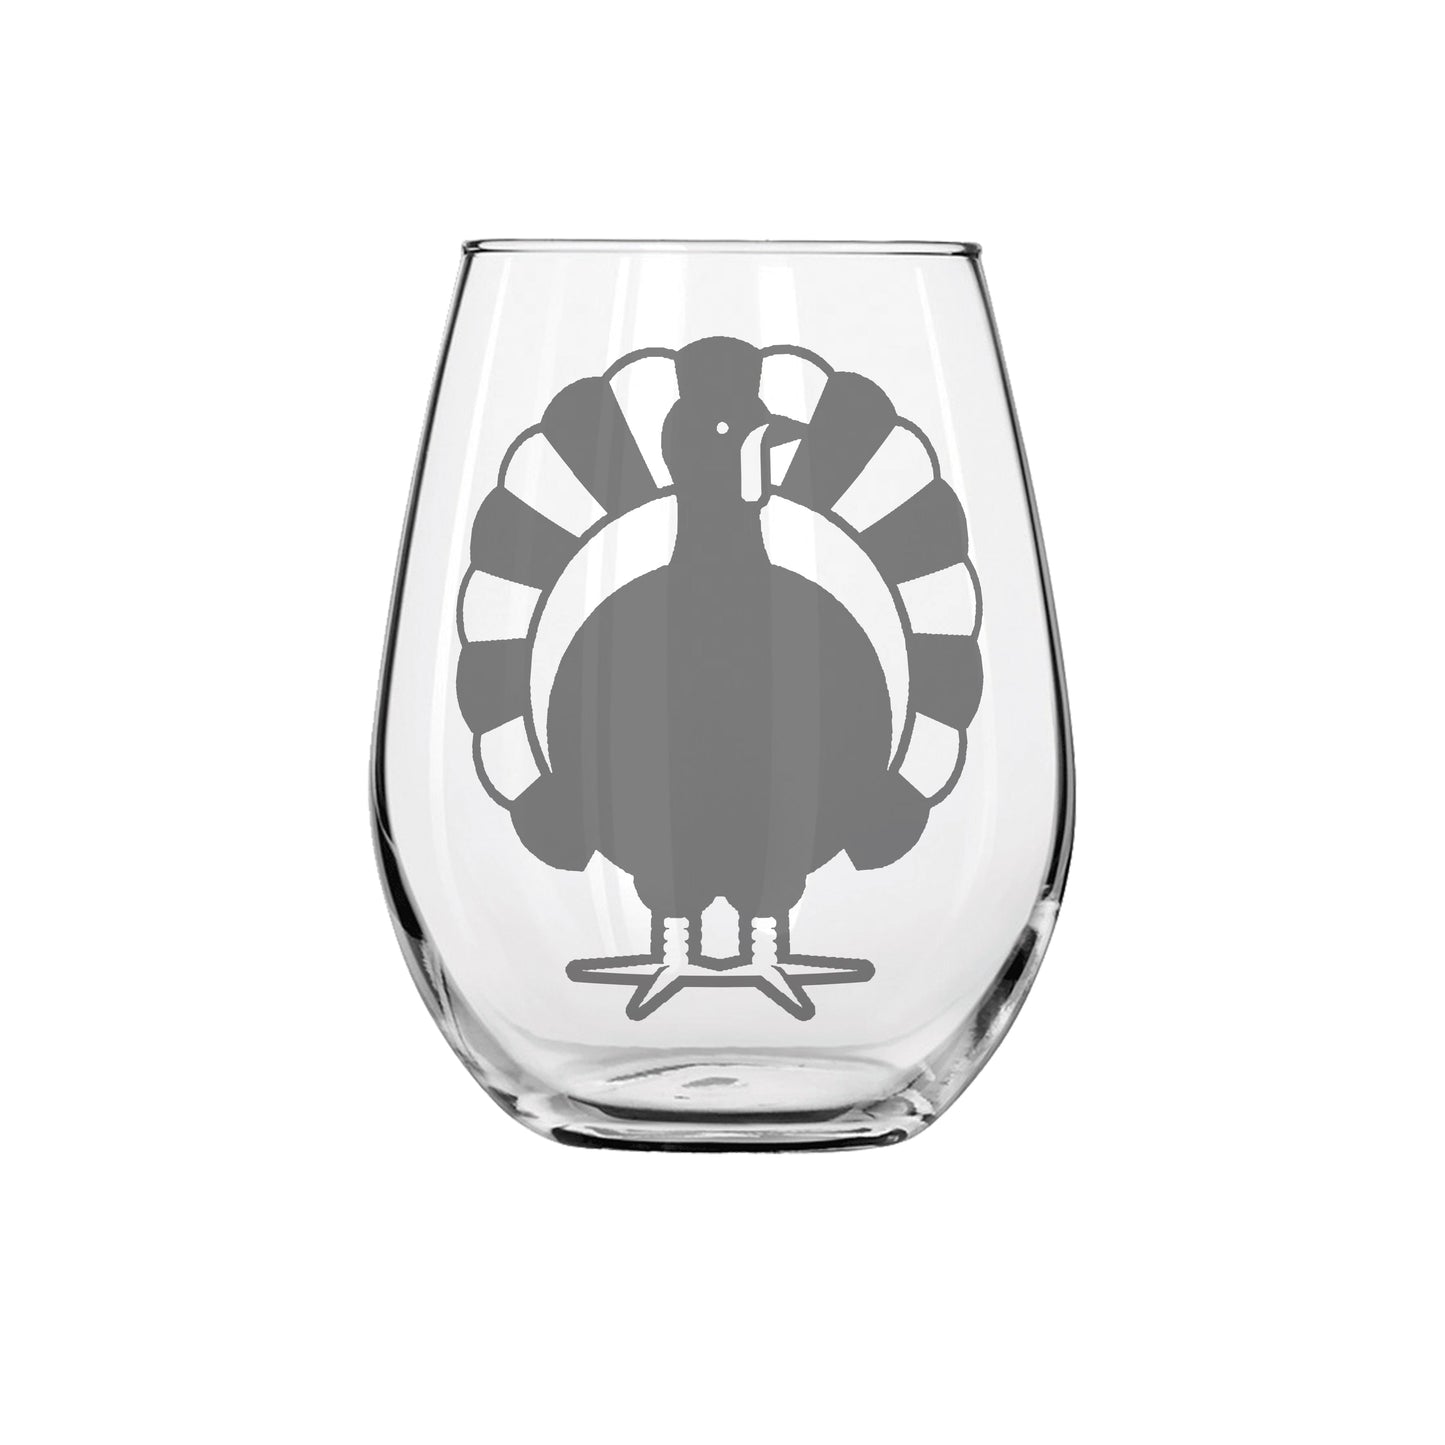 Turkey Sandblast Etched Stemless Wine Glass 20.5oz - Expressive DeZien 